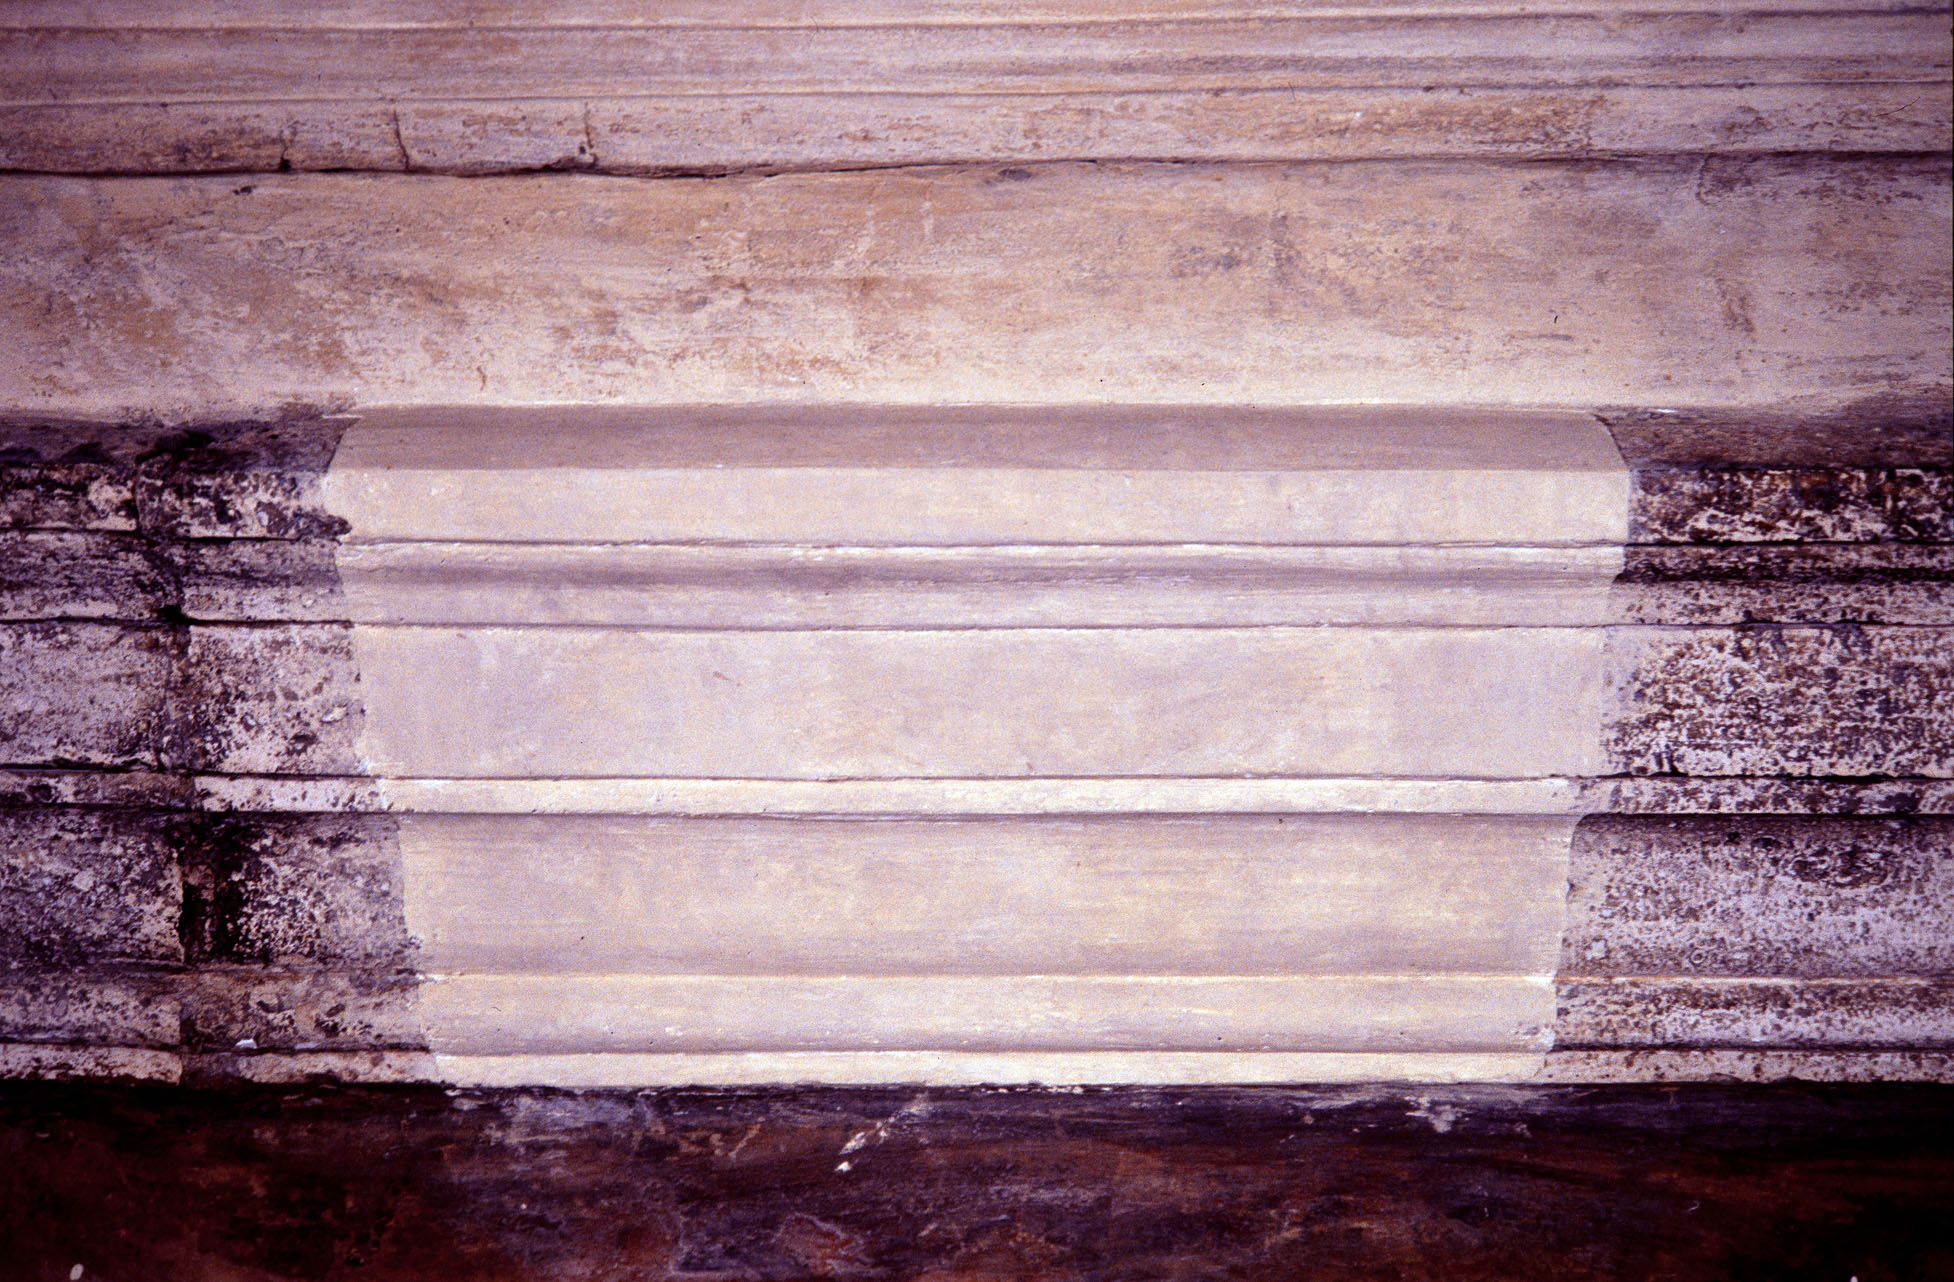 motivi decorativi a grottesche (decorazione plastico-pittorica, complesso decorativo) di Siciolante Girolamo (sec. XVI)